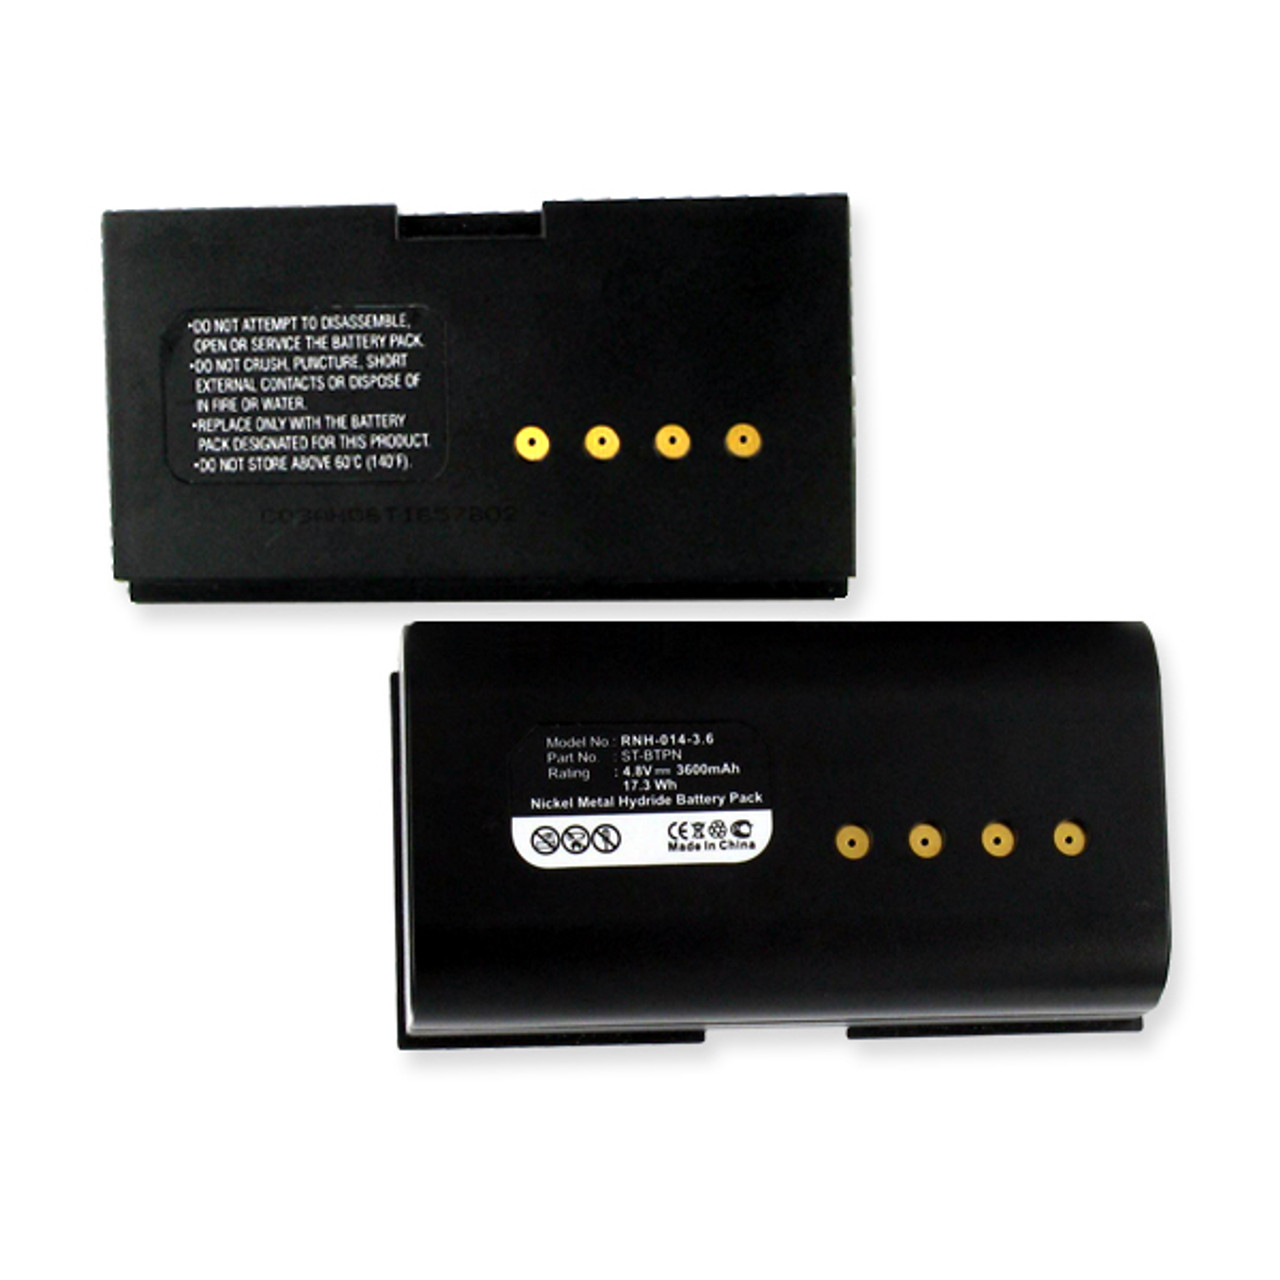 Crestron SmarTouch STX-1700CXP Remote Control Battery